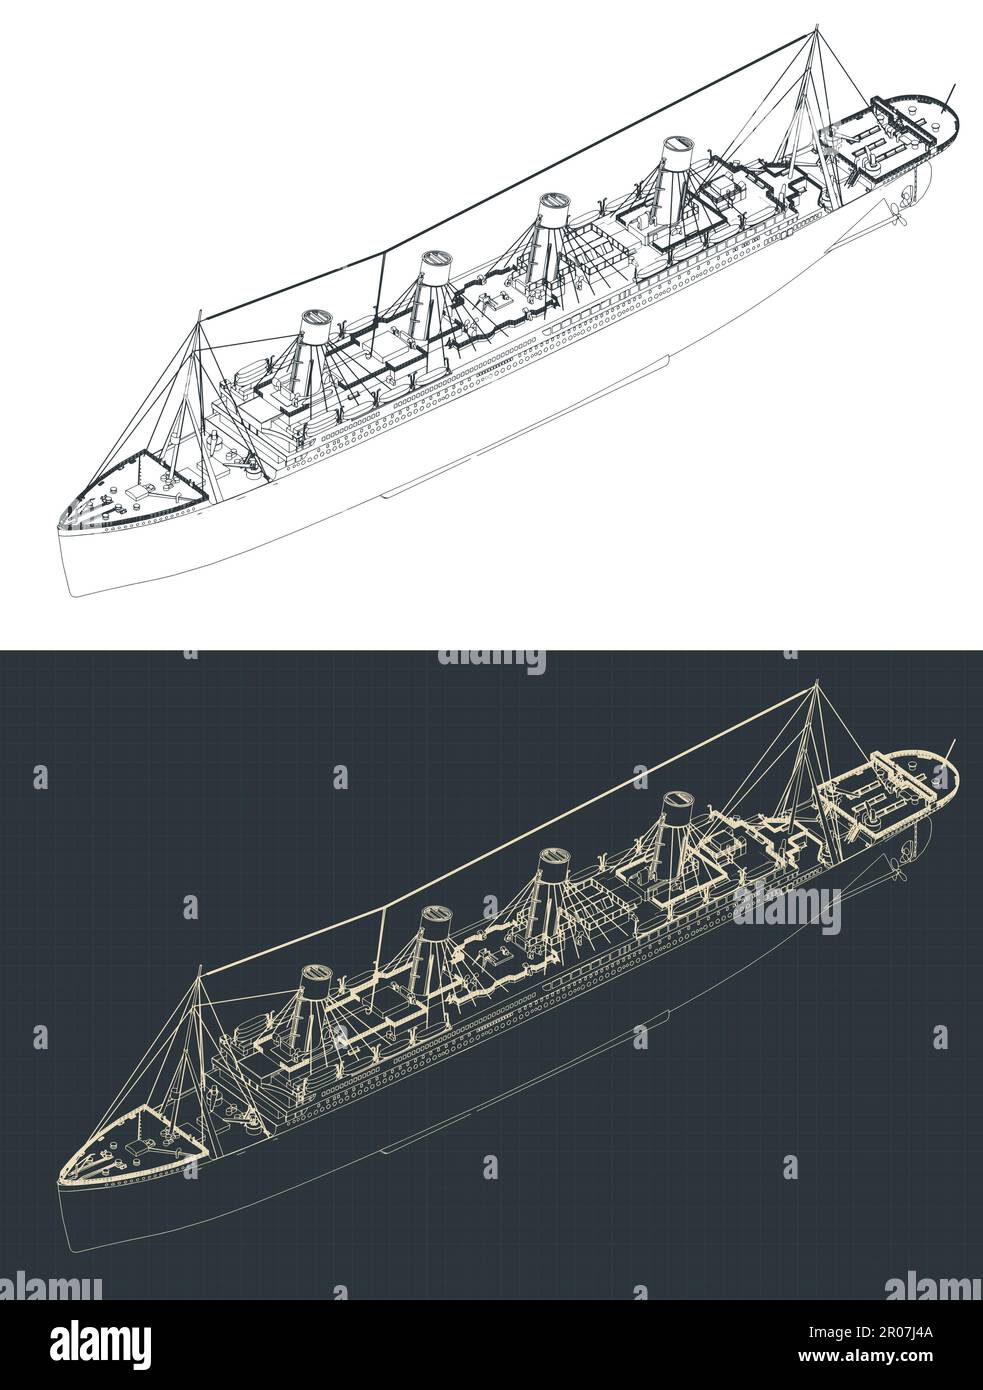 Illustration vectorielle stylisée d'un plan isométrique du Titanic Illustration de Vecteur